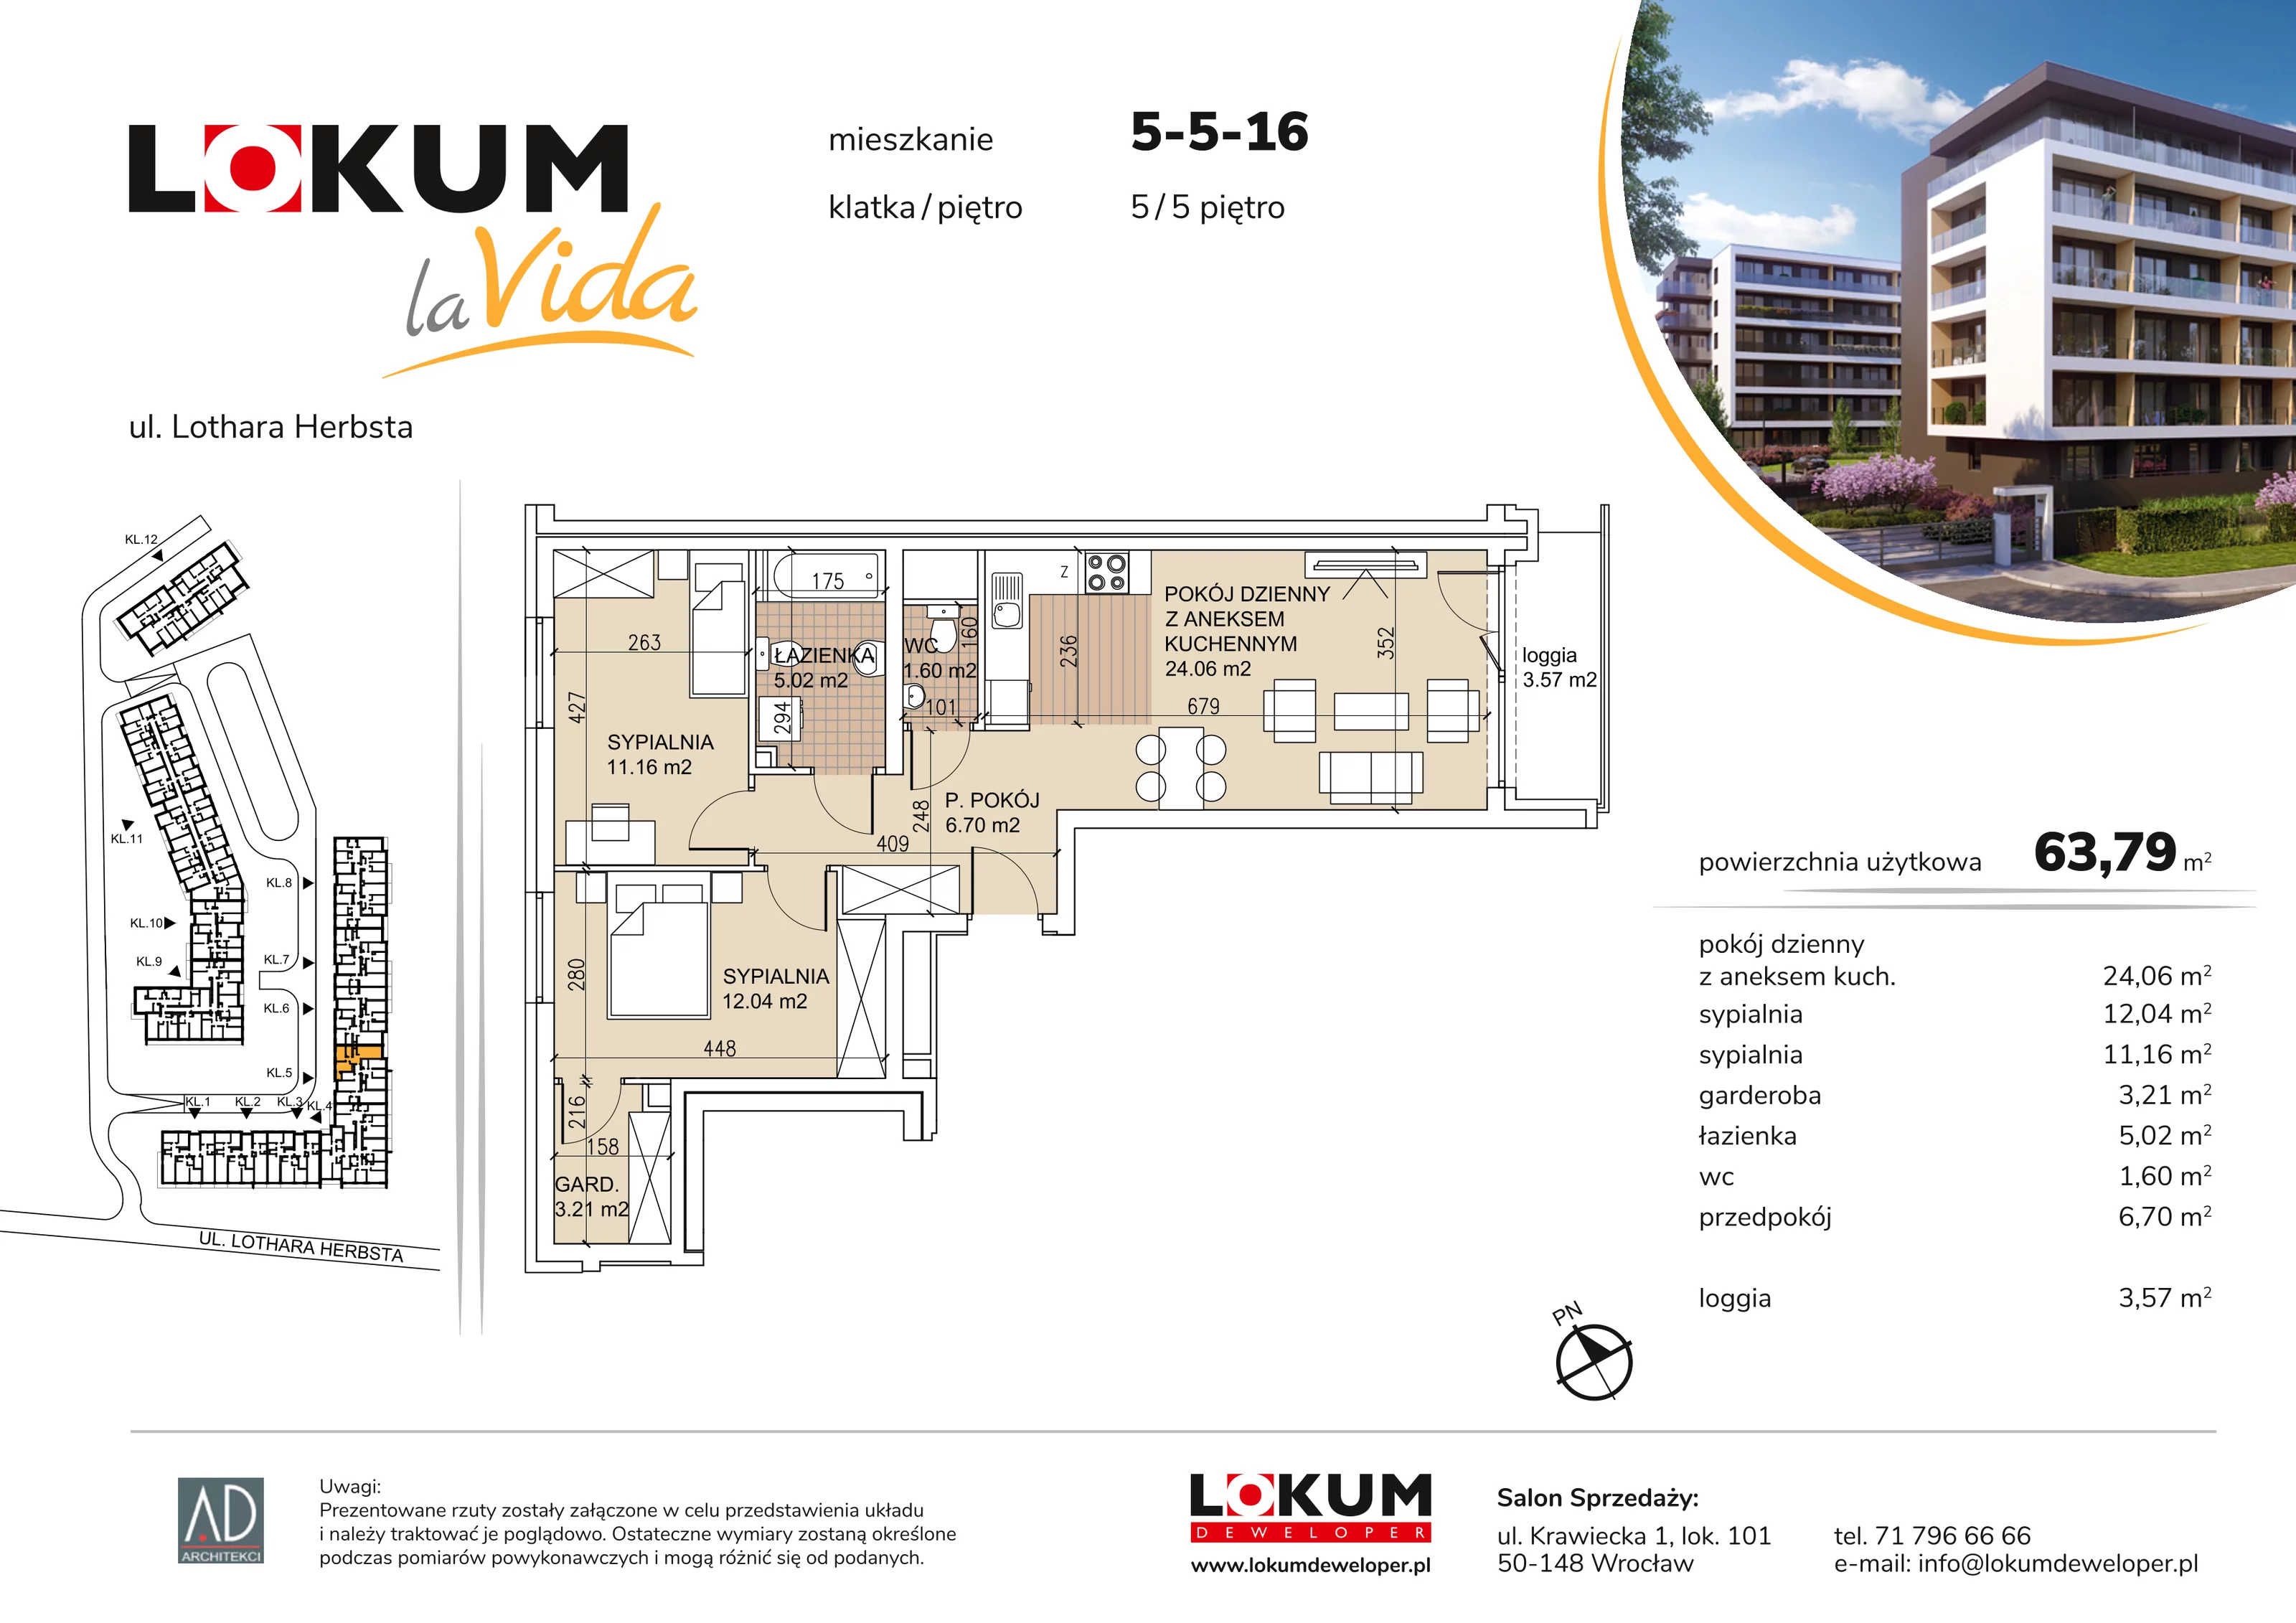 Mieszkanie 63,79 m², piętro 5, oferta nr 5-5-16, Lokum la Vida, Wrocław, Sołtysowice, ul. Lothara Herbsta